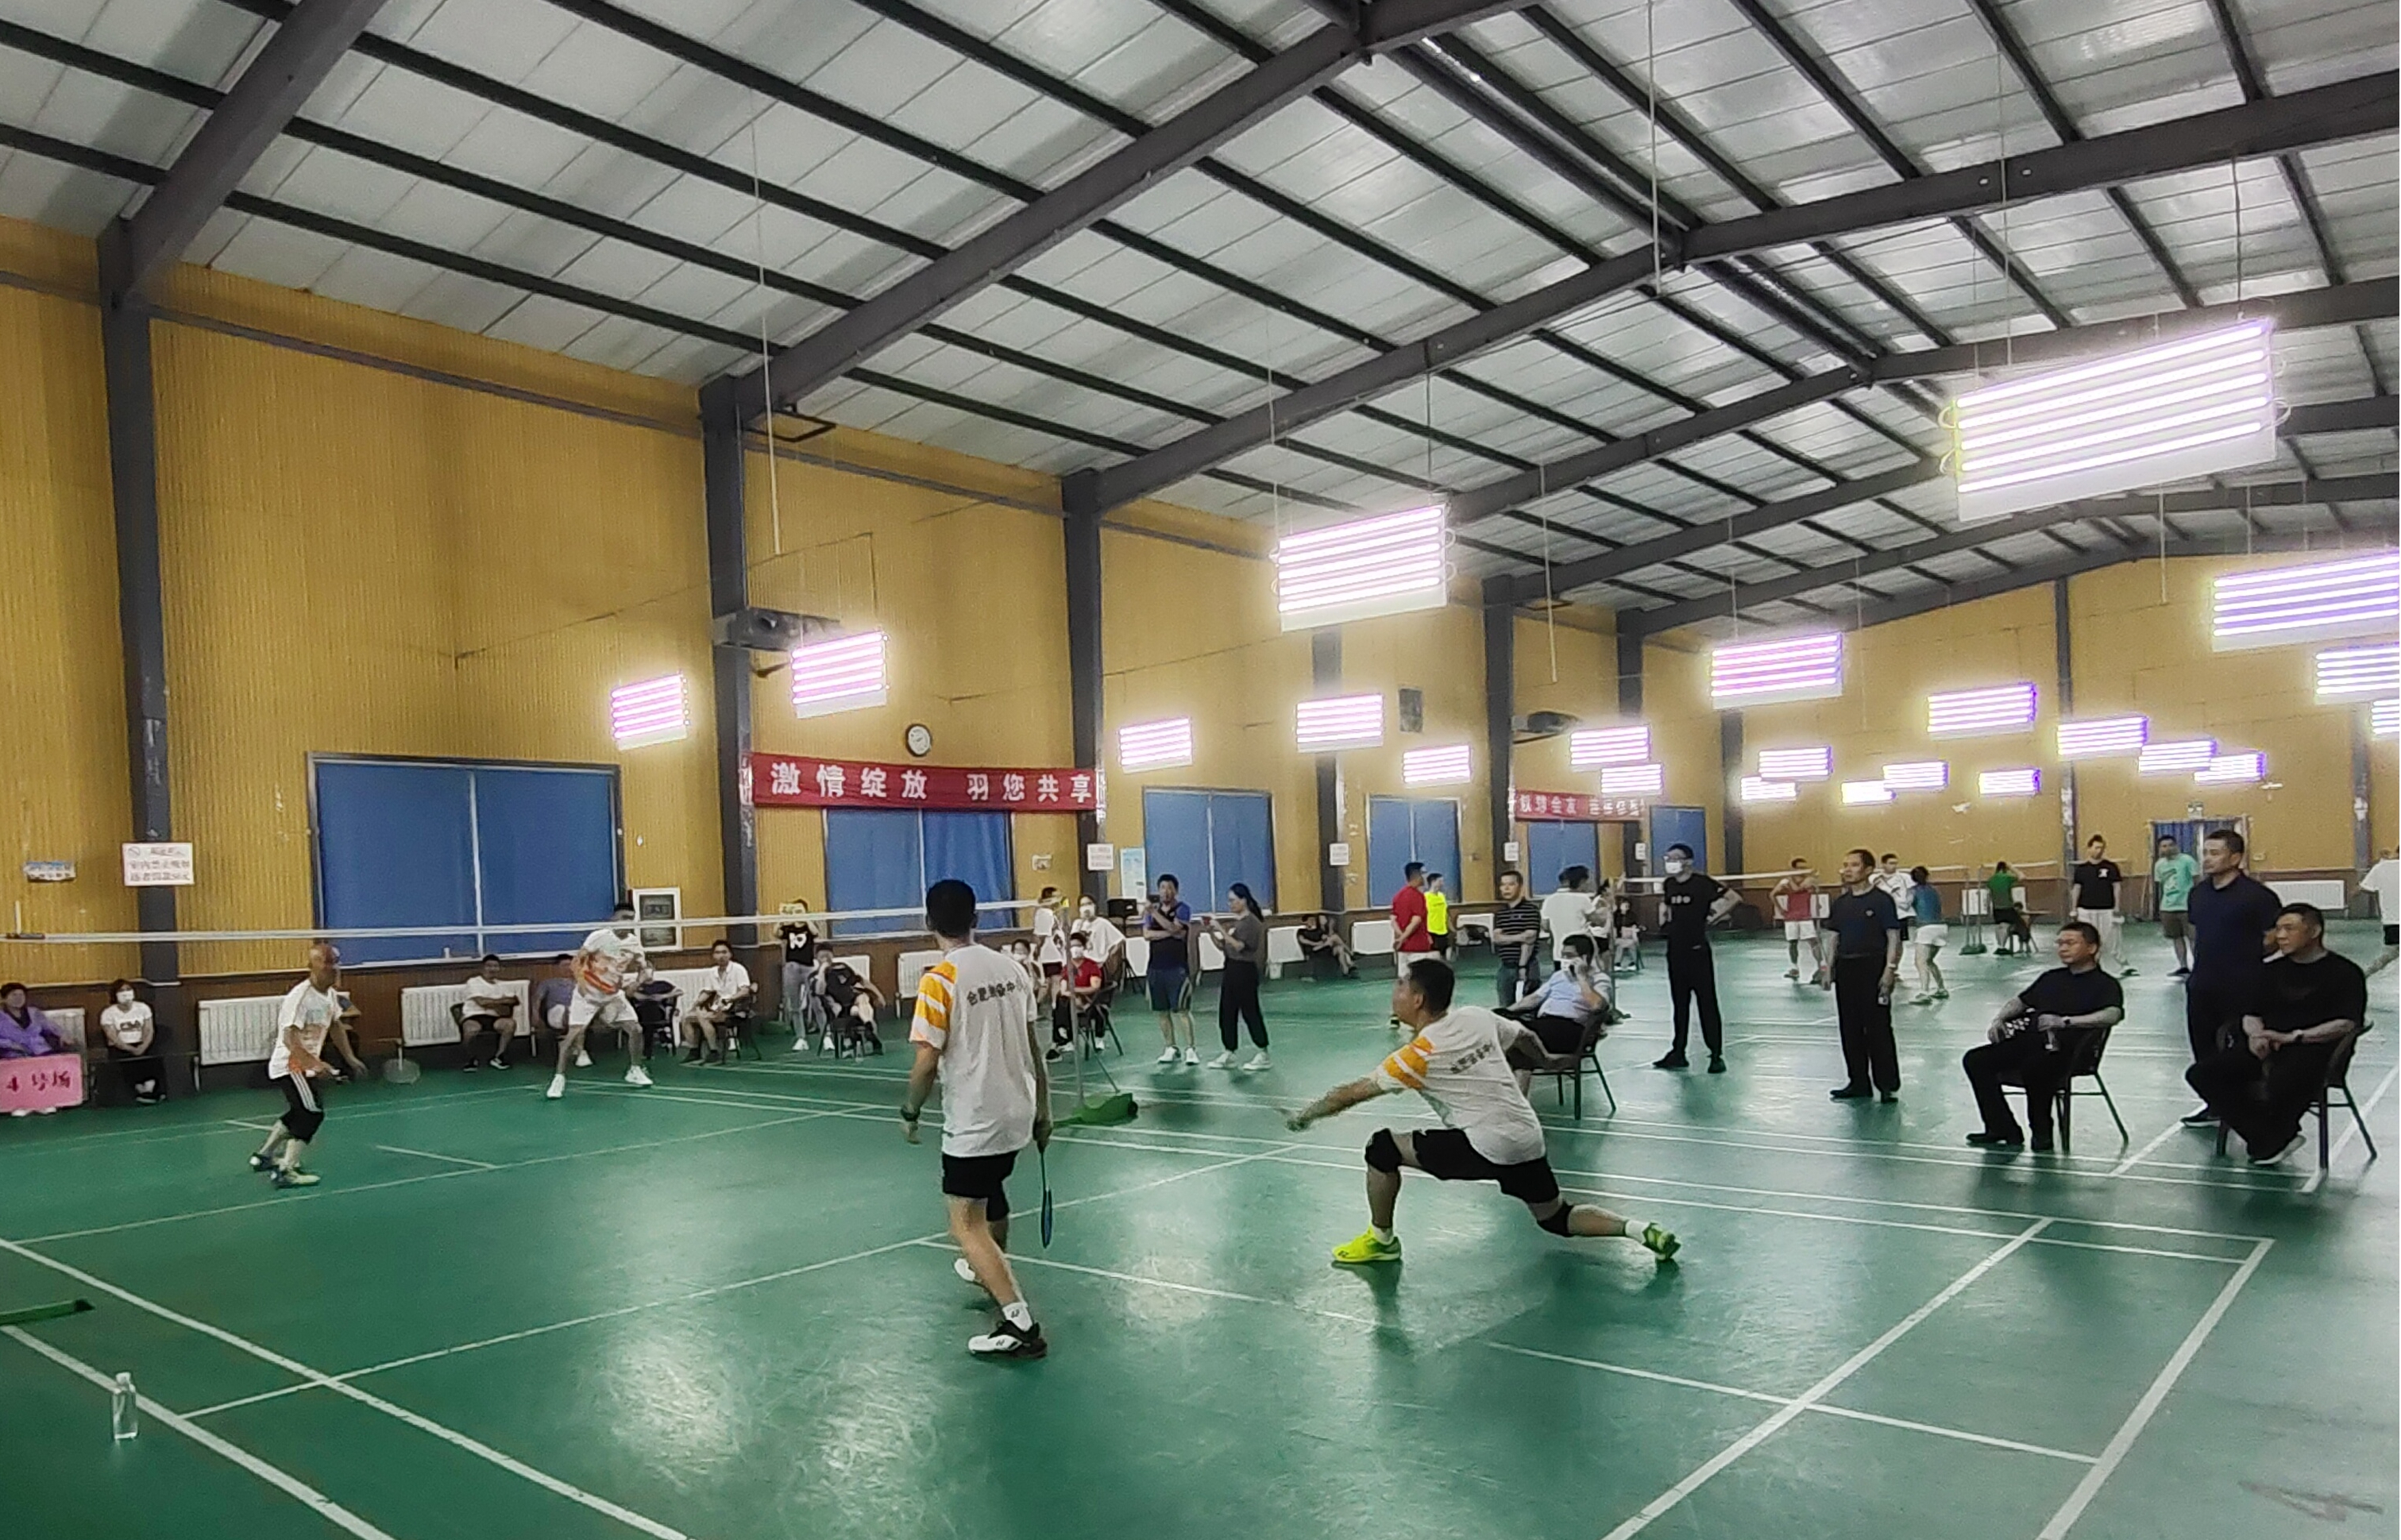 省局第二届羽毛球比赛在徐州成功举办